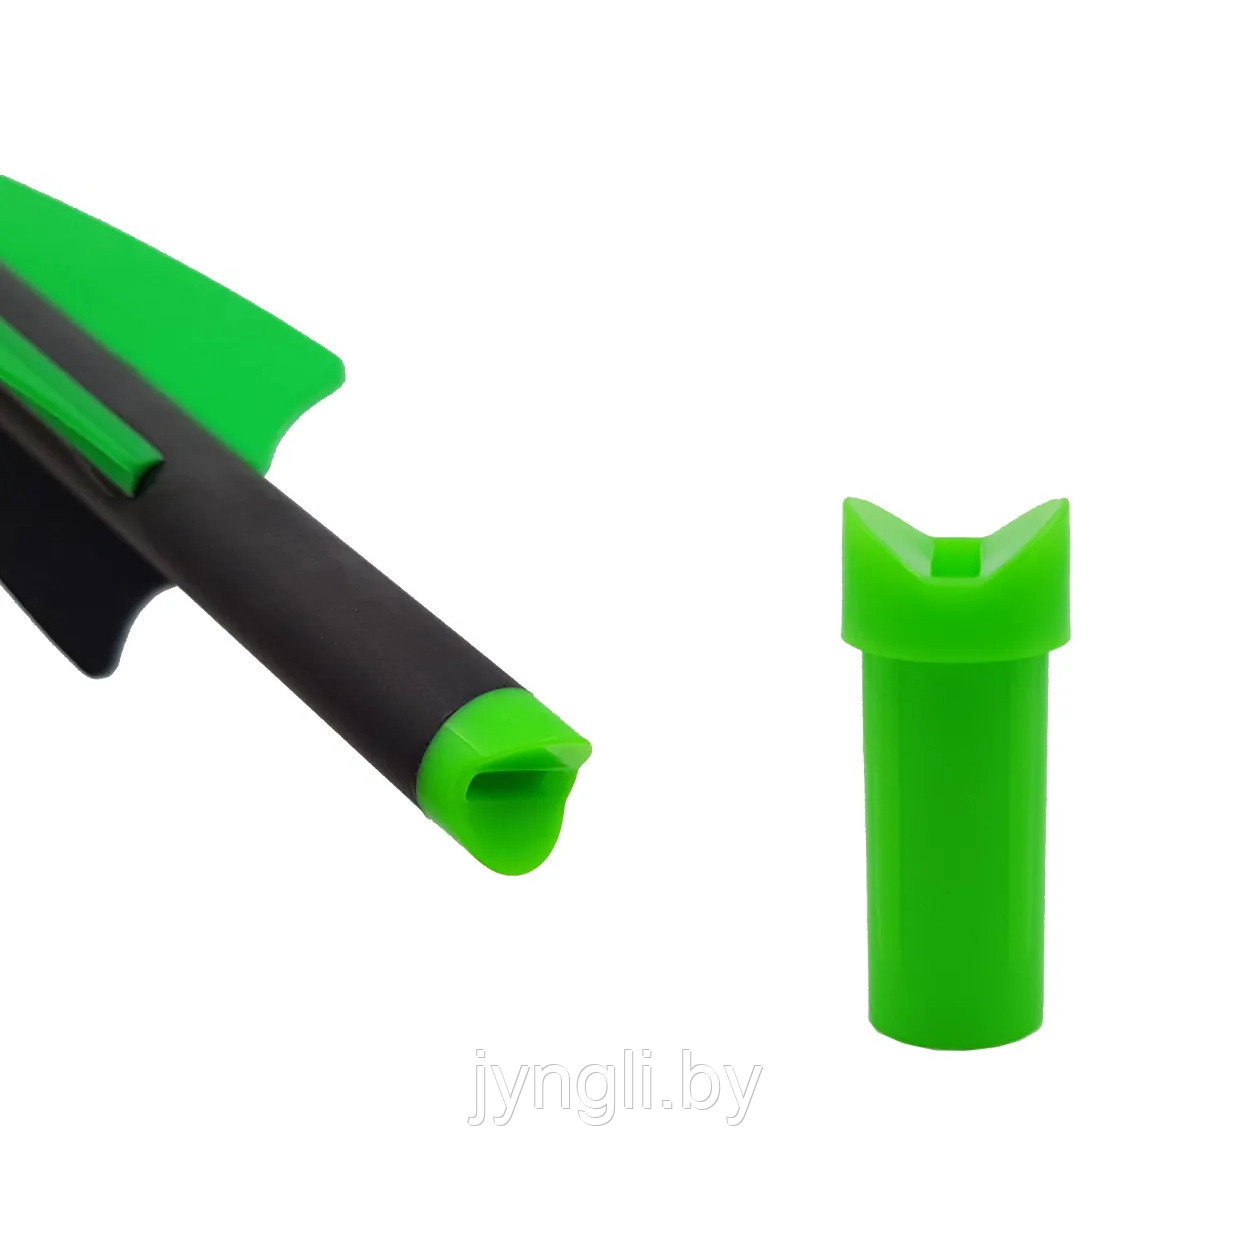 Хвостовик Centershot для арбалетных стрел Toxic зеленый